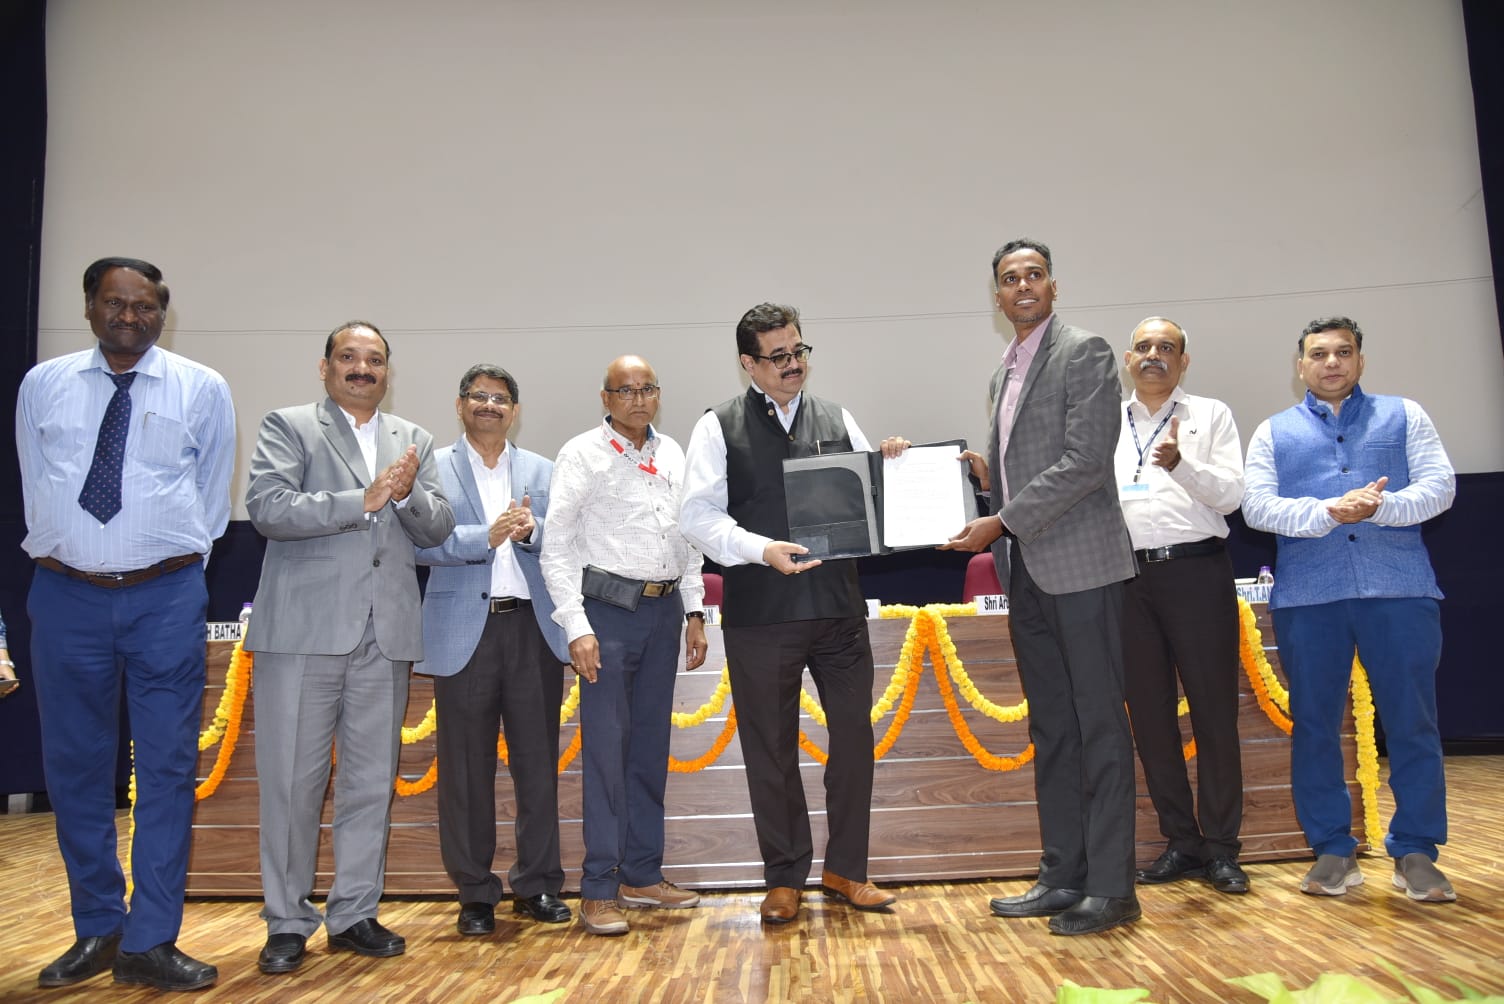 Historic day for Visakhapatnam- Atul Bhatt, CMD, RINL inaugurates the prestigious ‘Center for Entrepreneurship on Industry 4.0’